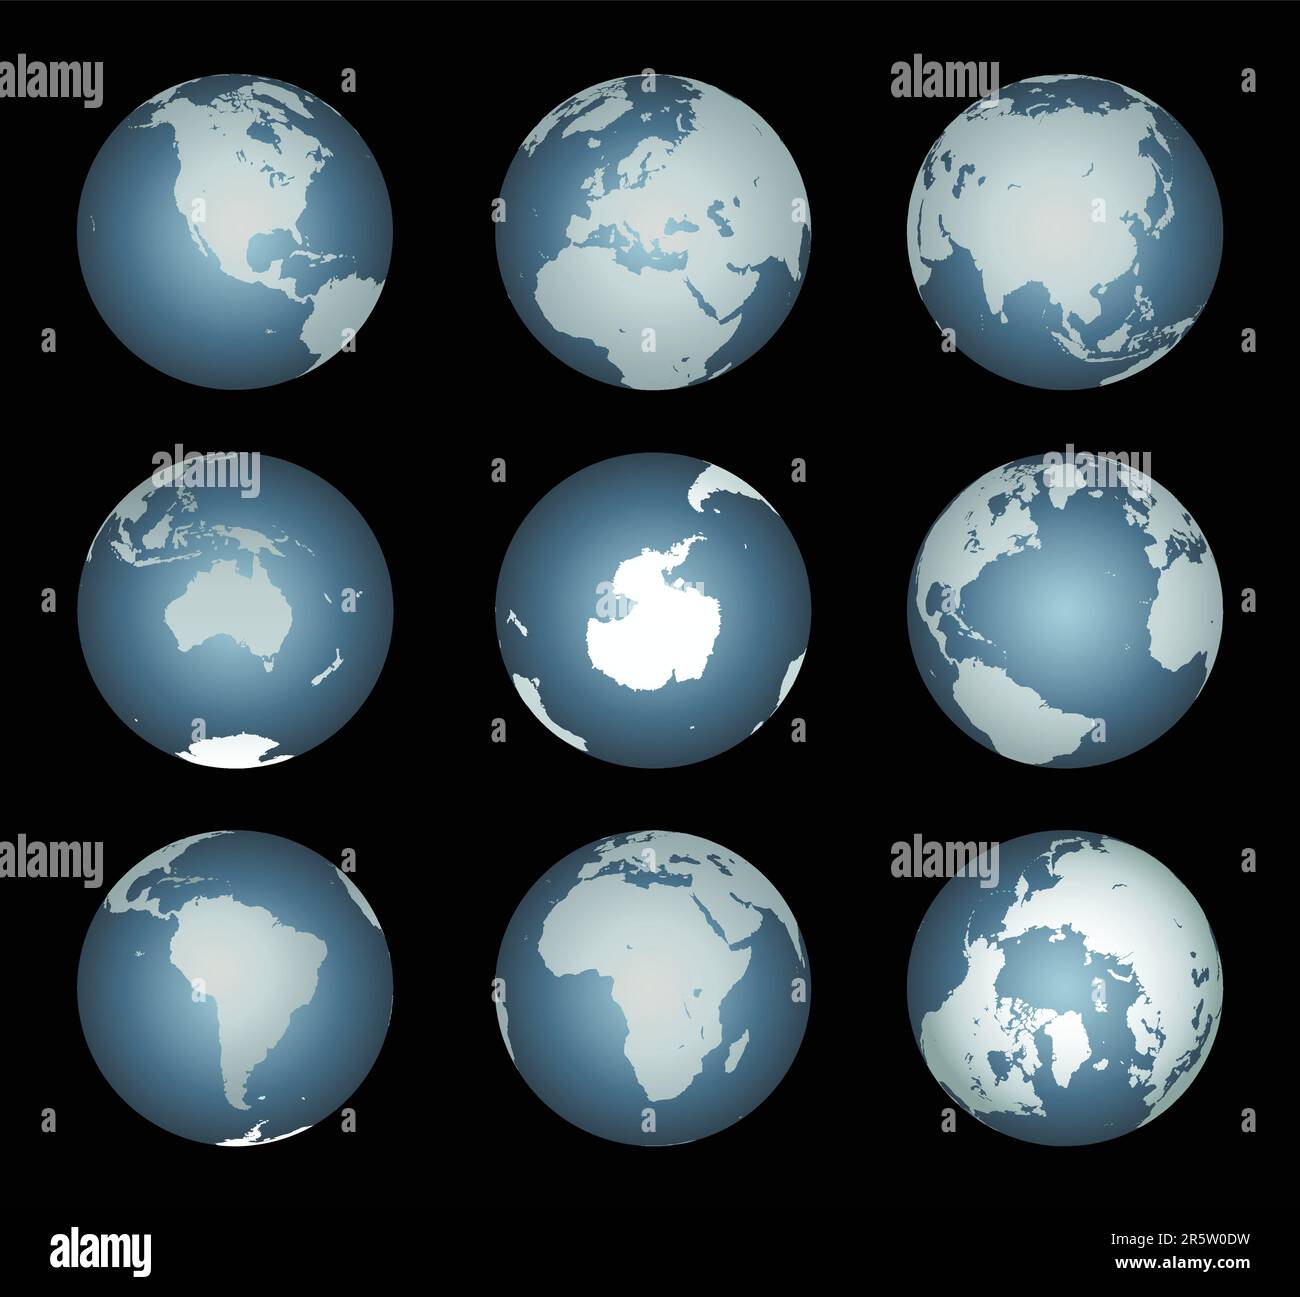 Continents mondiaux (Vector). Carte précise sur un globe. Inclut l'Antarctique, l'Arctique, l'Atlantique. Les détails incluent les petites chaînes d'îles, les lacs et les mers. Illustration de Vecteur